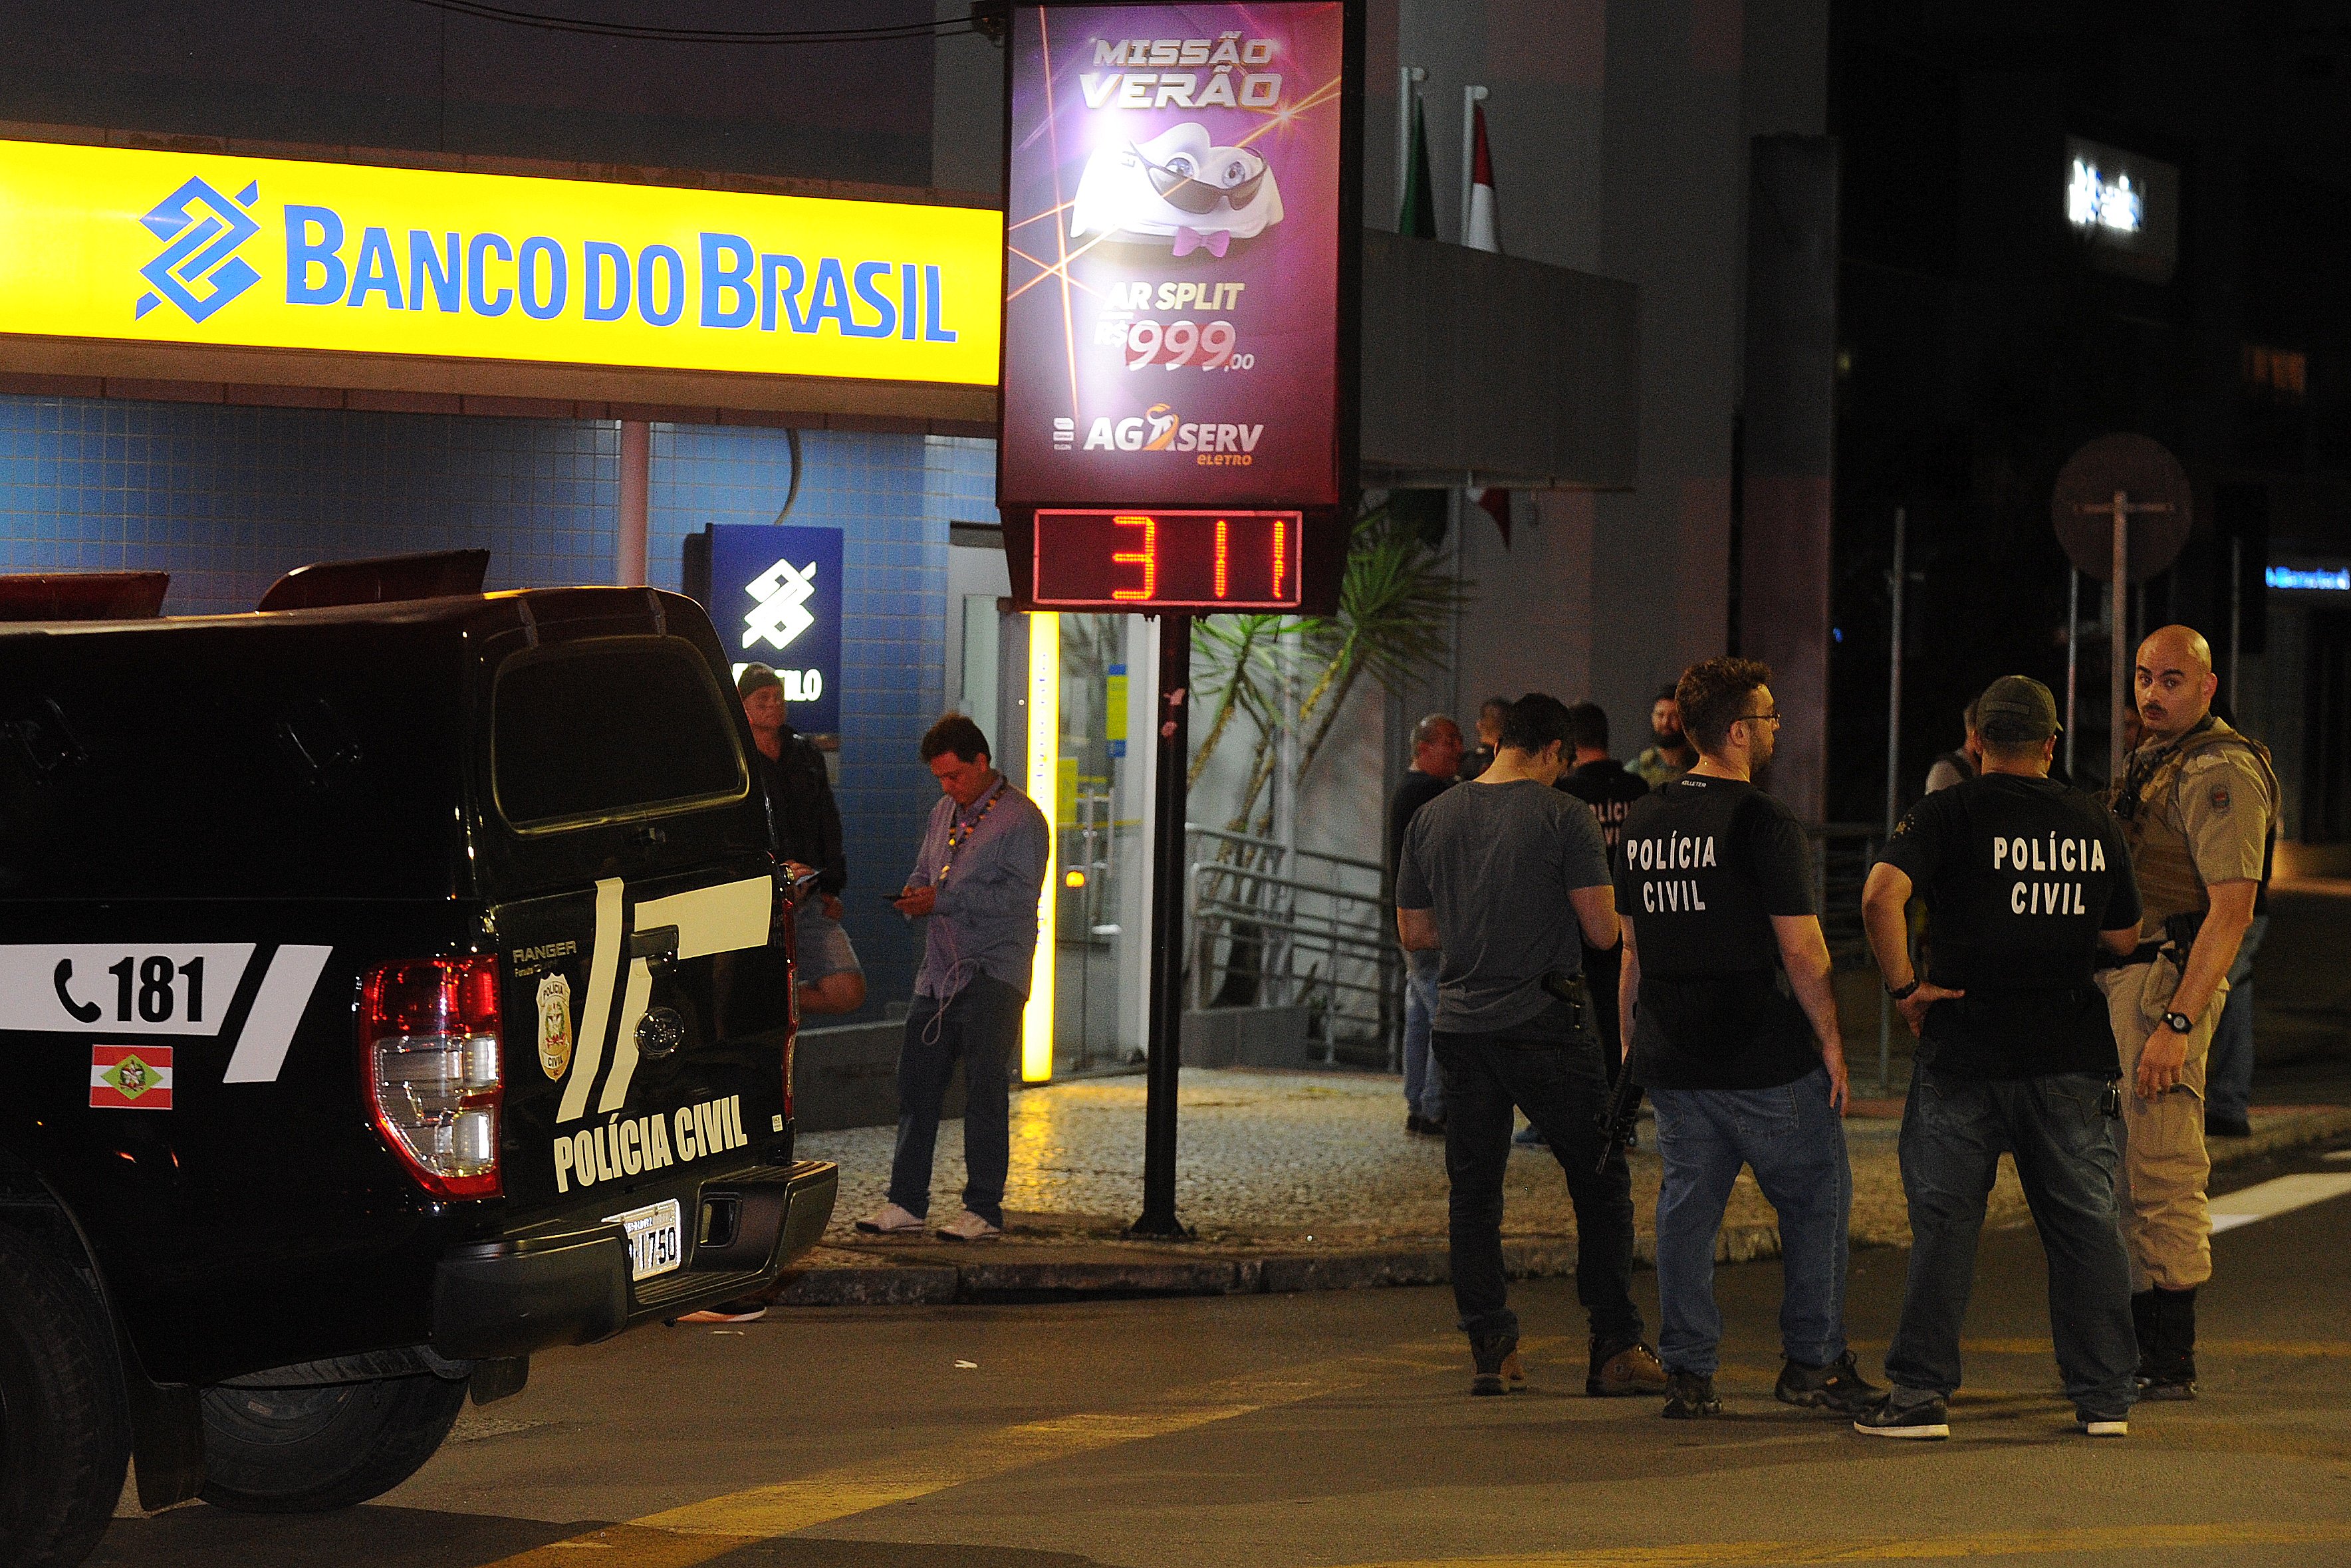 Criciúma registrou intensos disparos, com criminosos atacando bancos